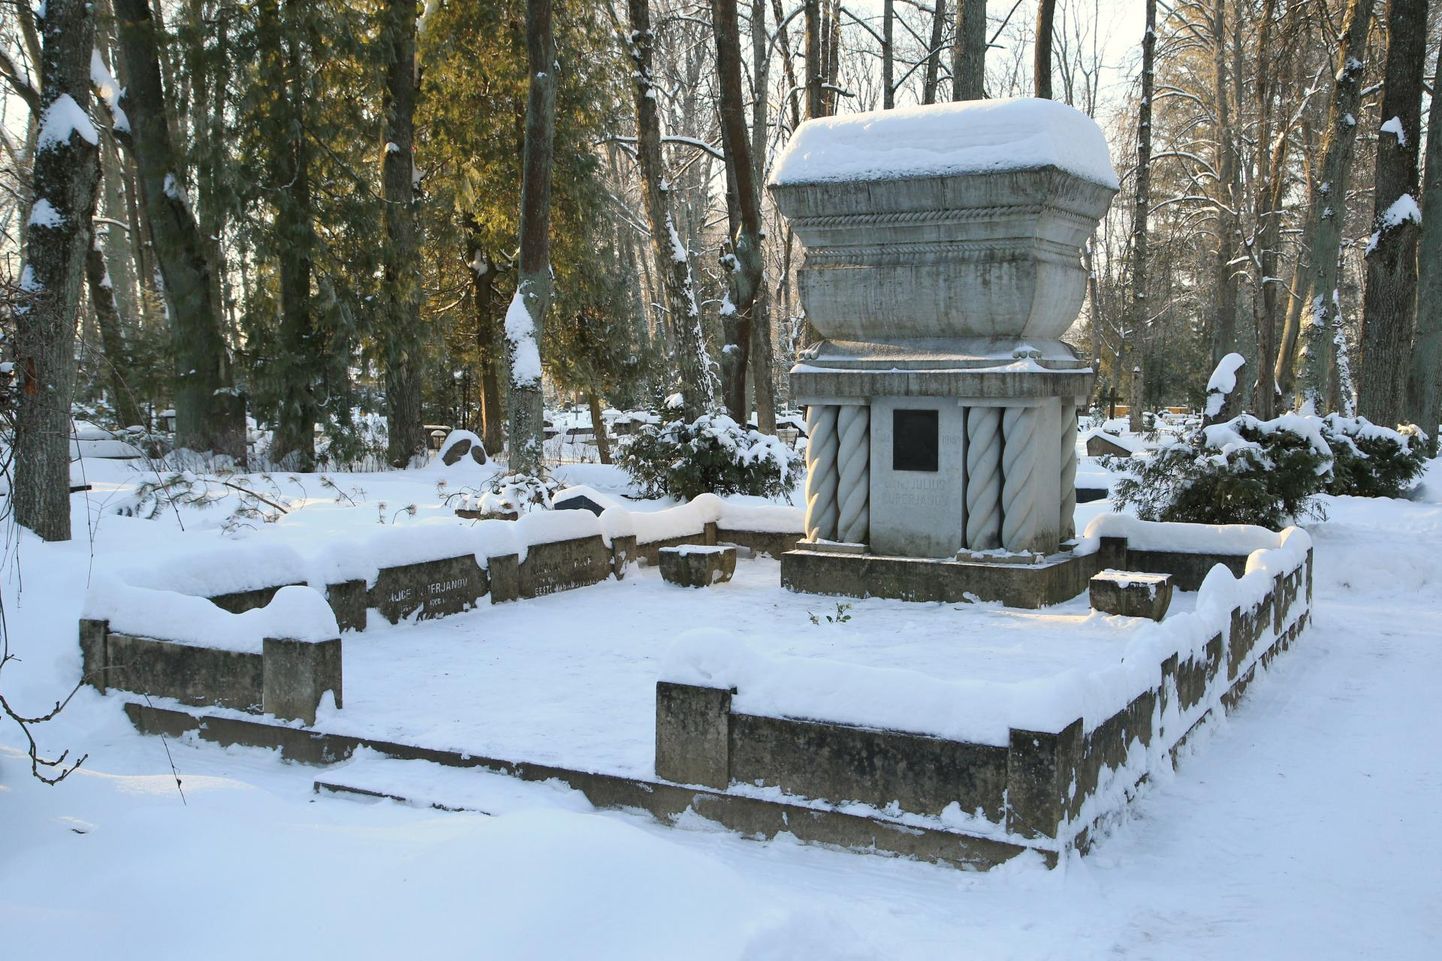 Julius Kuperjanovi hauale Raadi kalmistul tõid tudengid Nõukogude võimu ajal küünlaid, et väljendada oma protestimeelt.